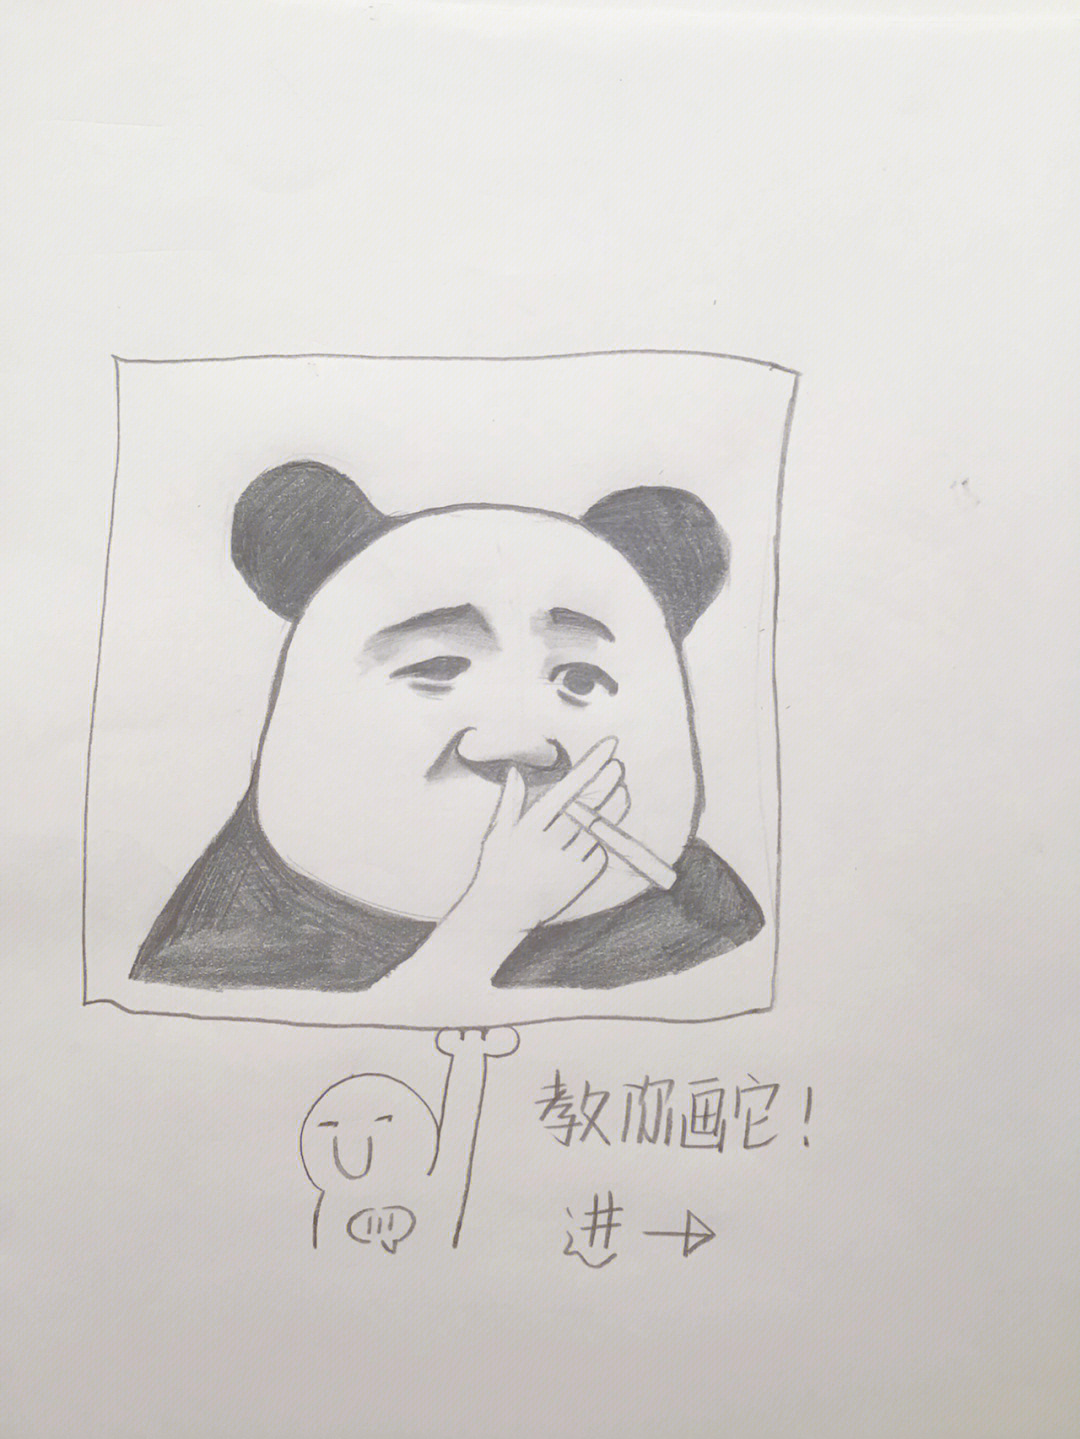 教你画熊猫表情包包学包会建议收藏